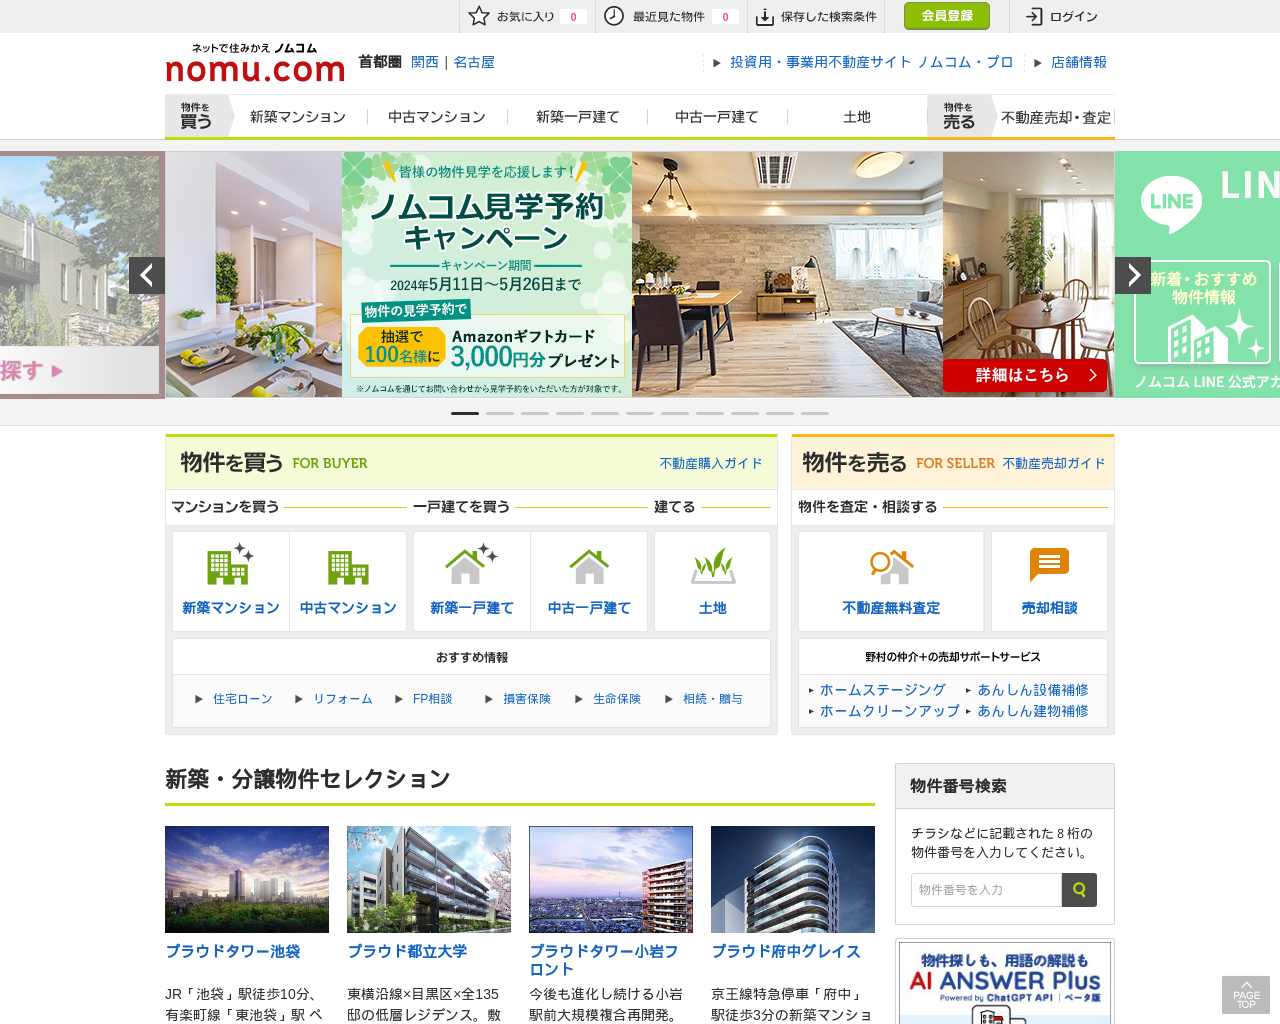 nomu.com